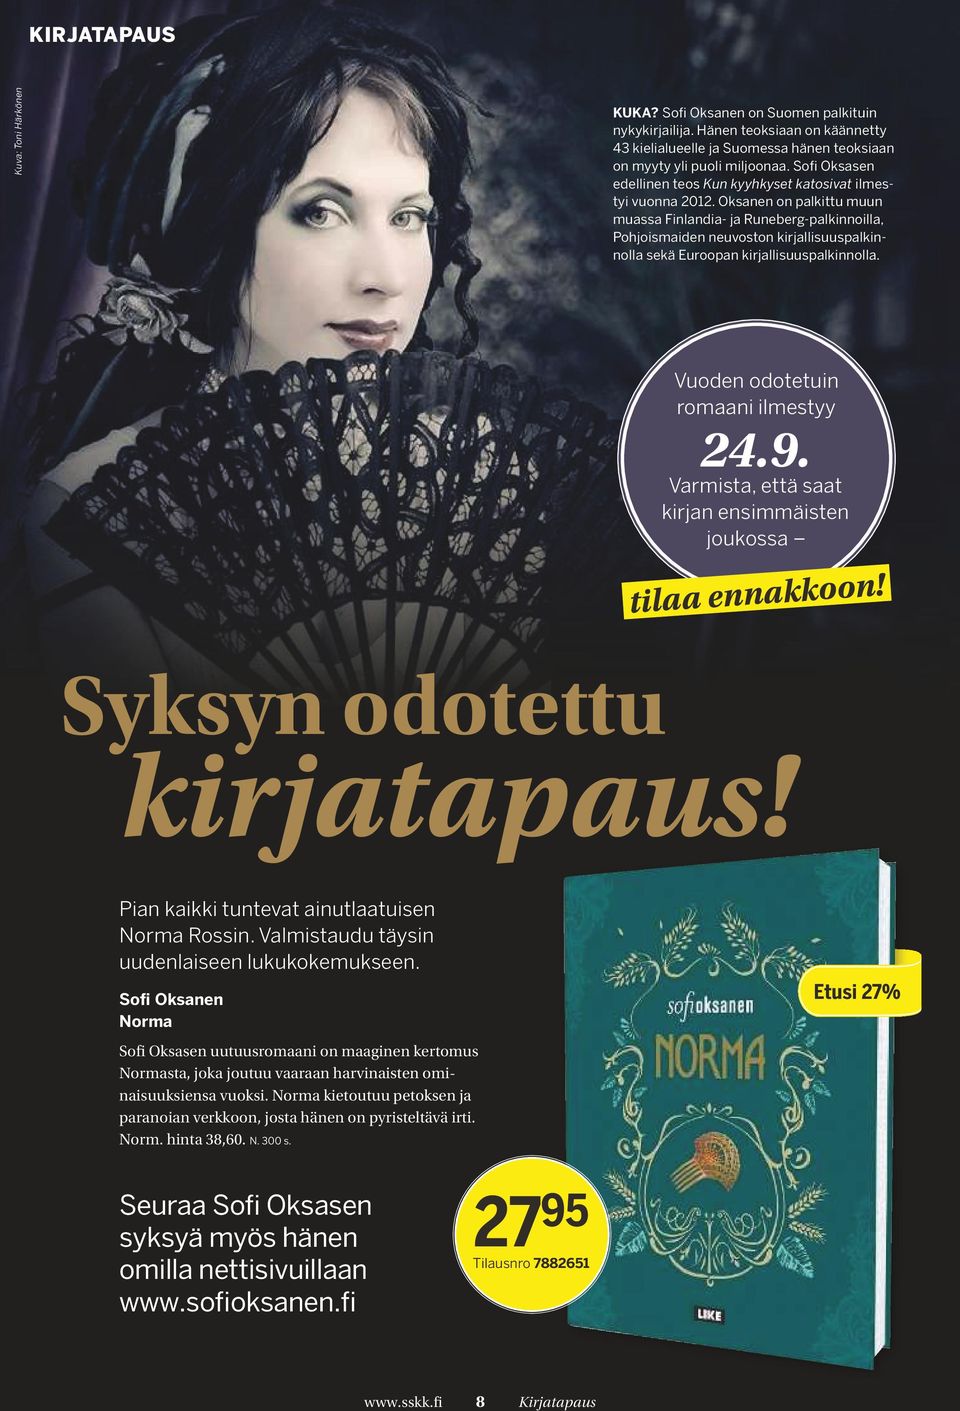 Oksanen on palkittu muun muassa Finlandia- ja Runeberg-palkinnoilla, Pohjoismaiden neuvoston kirjallisuuspalkinnolla sekä Euroopan kirjallisuuspalkinnolla. Vuoden odotetuin romaani ilmestyy 24.9.